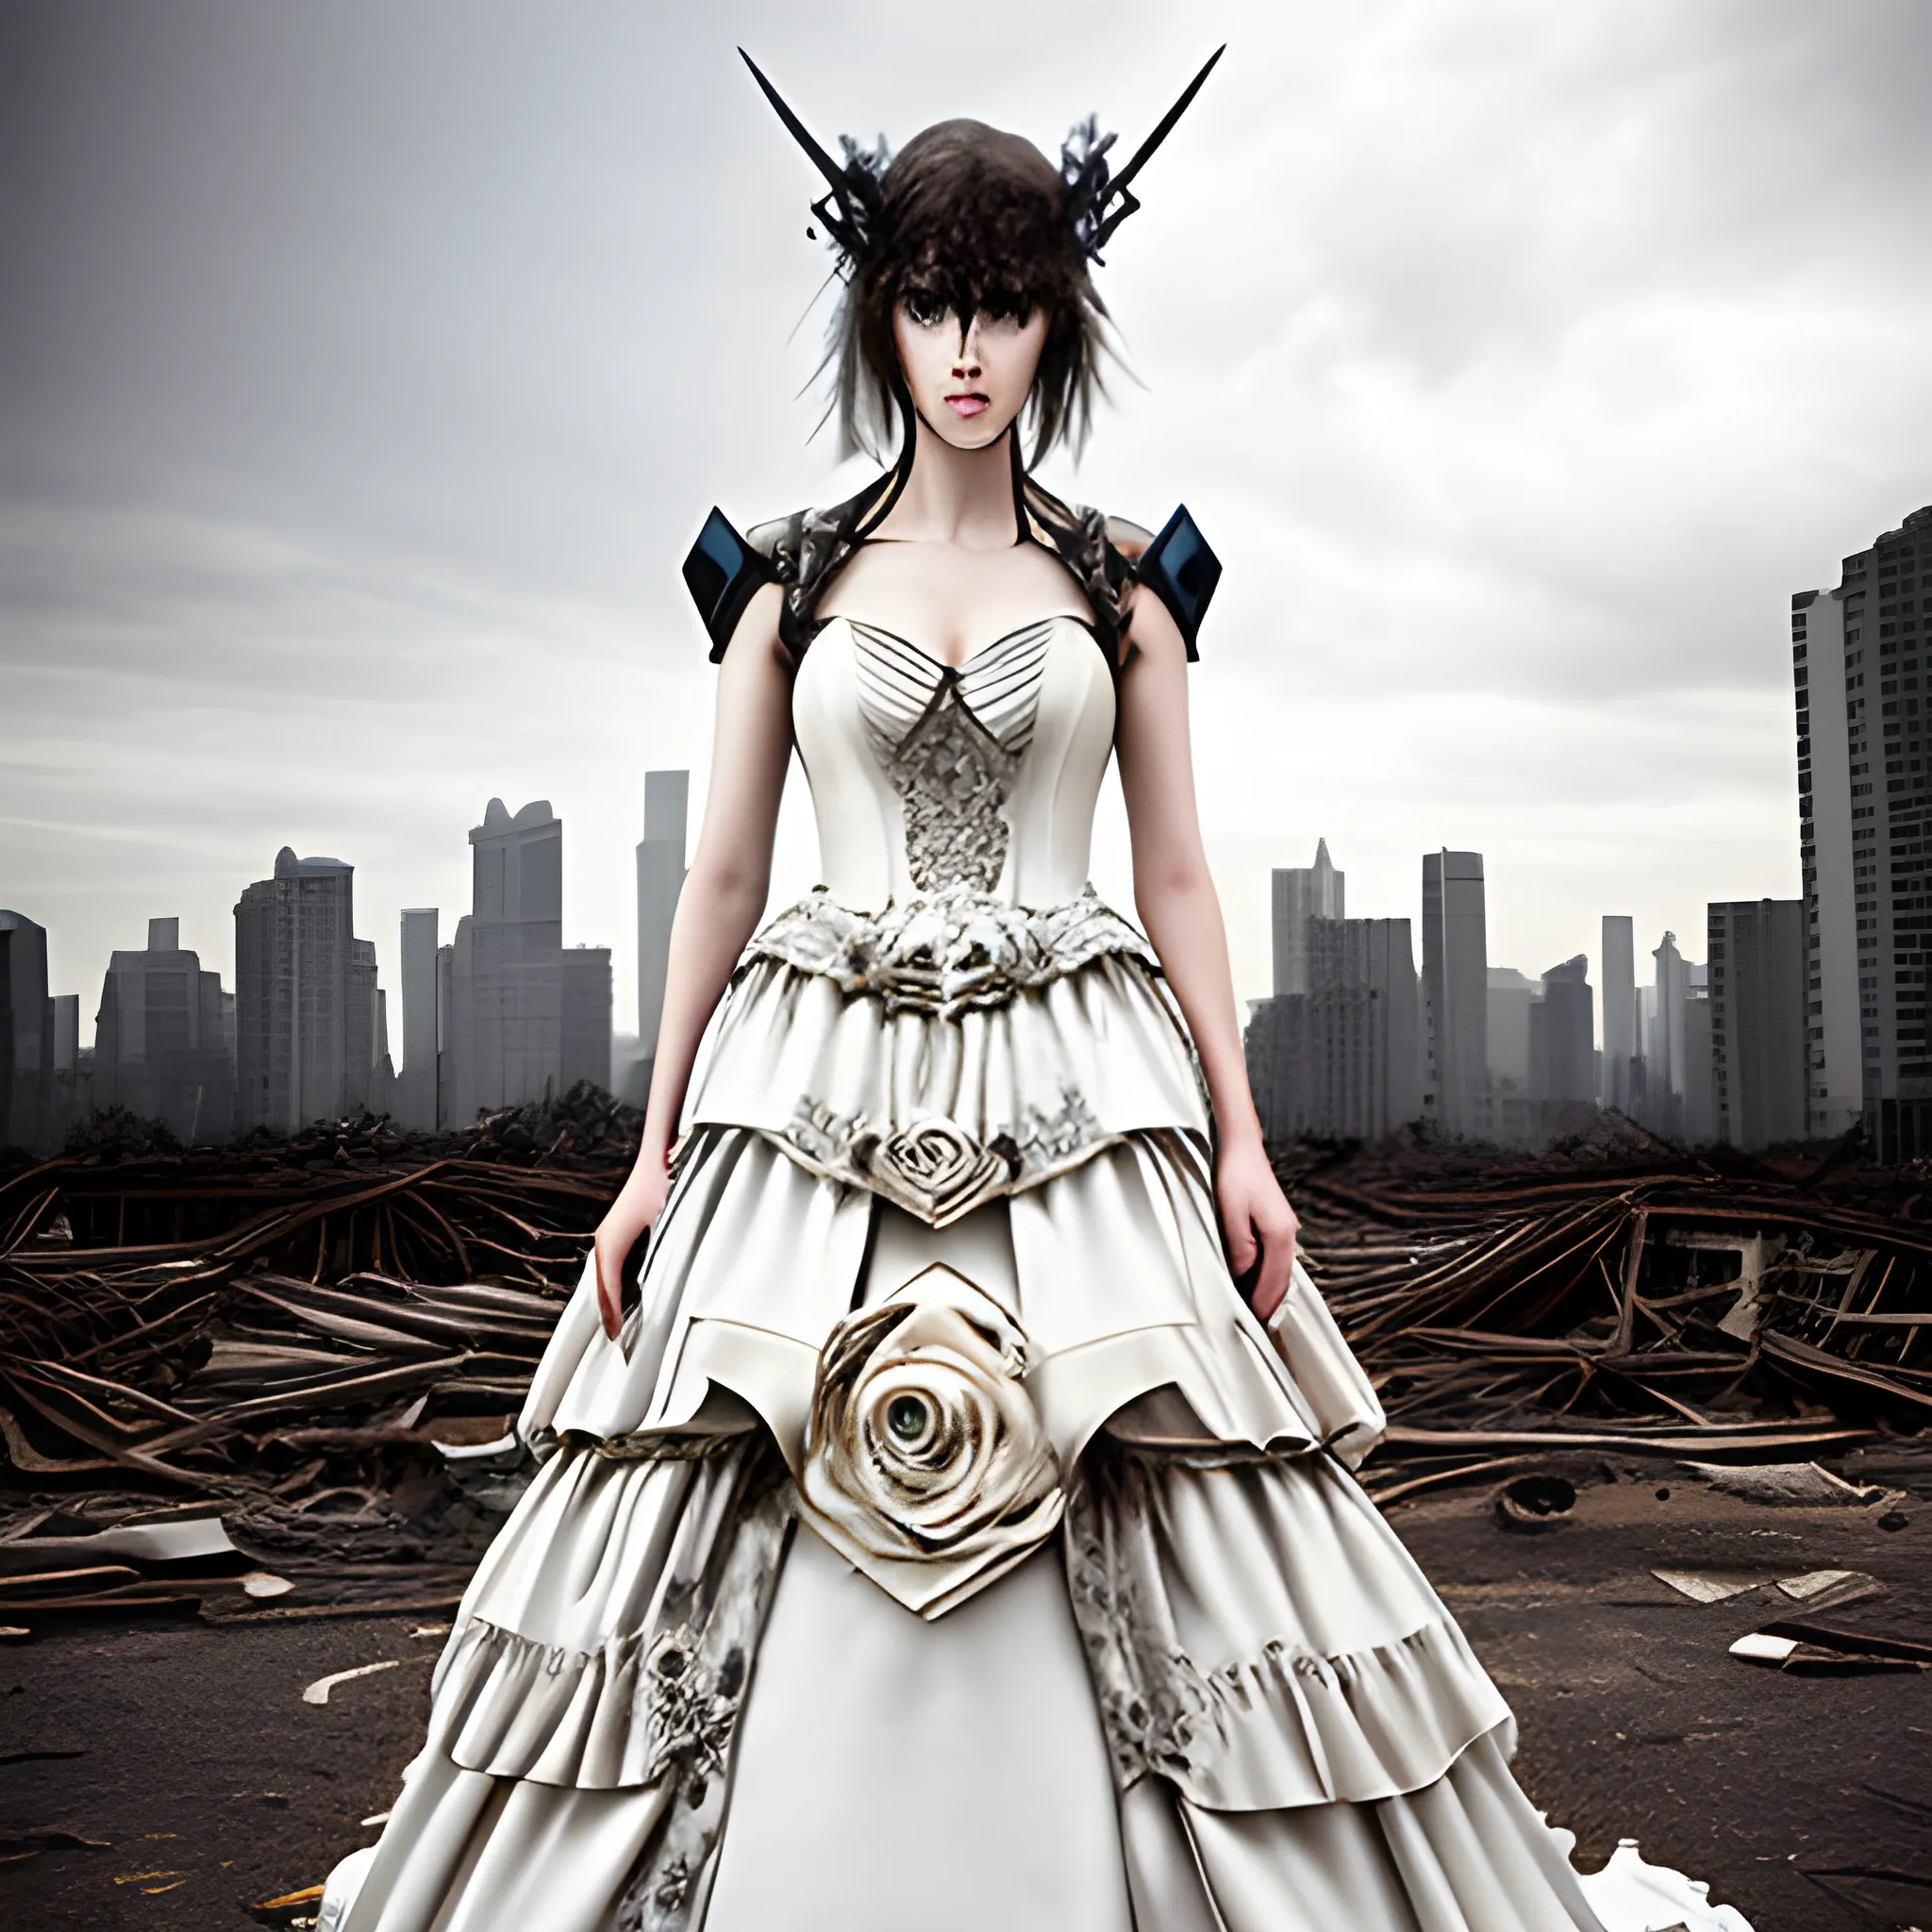 Urban apocalypse death fantasy wedding dress 